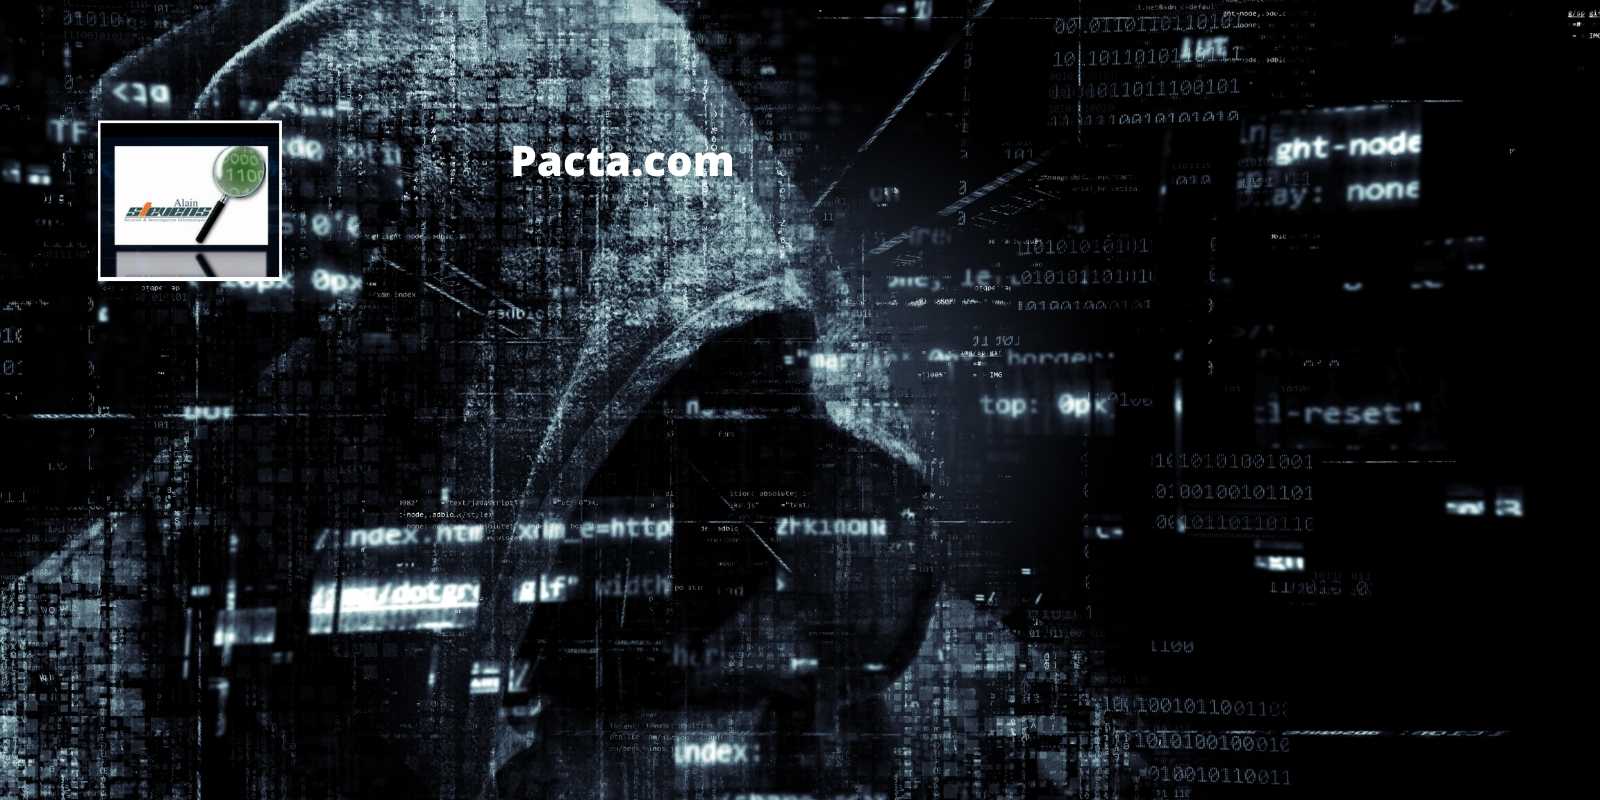 Les détectives enquêtent sur la cybercriminalité